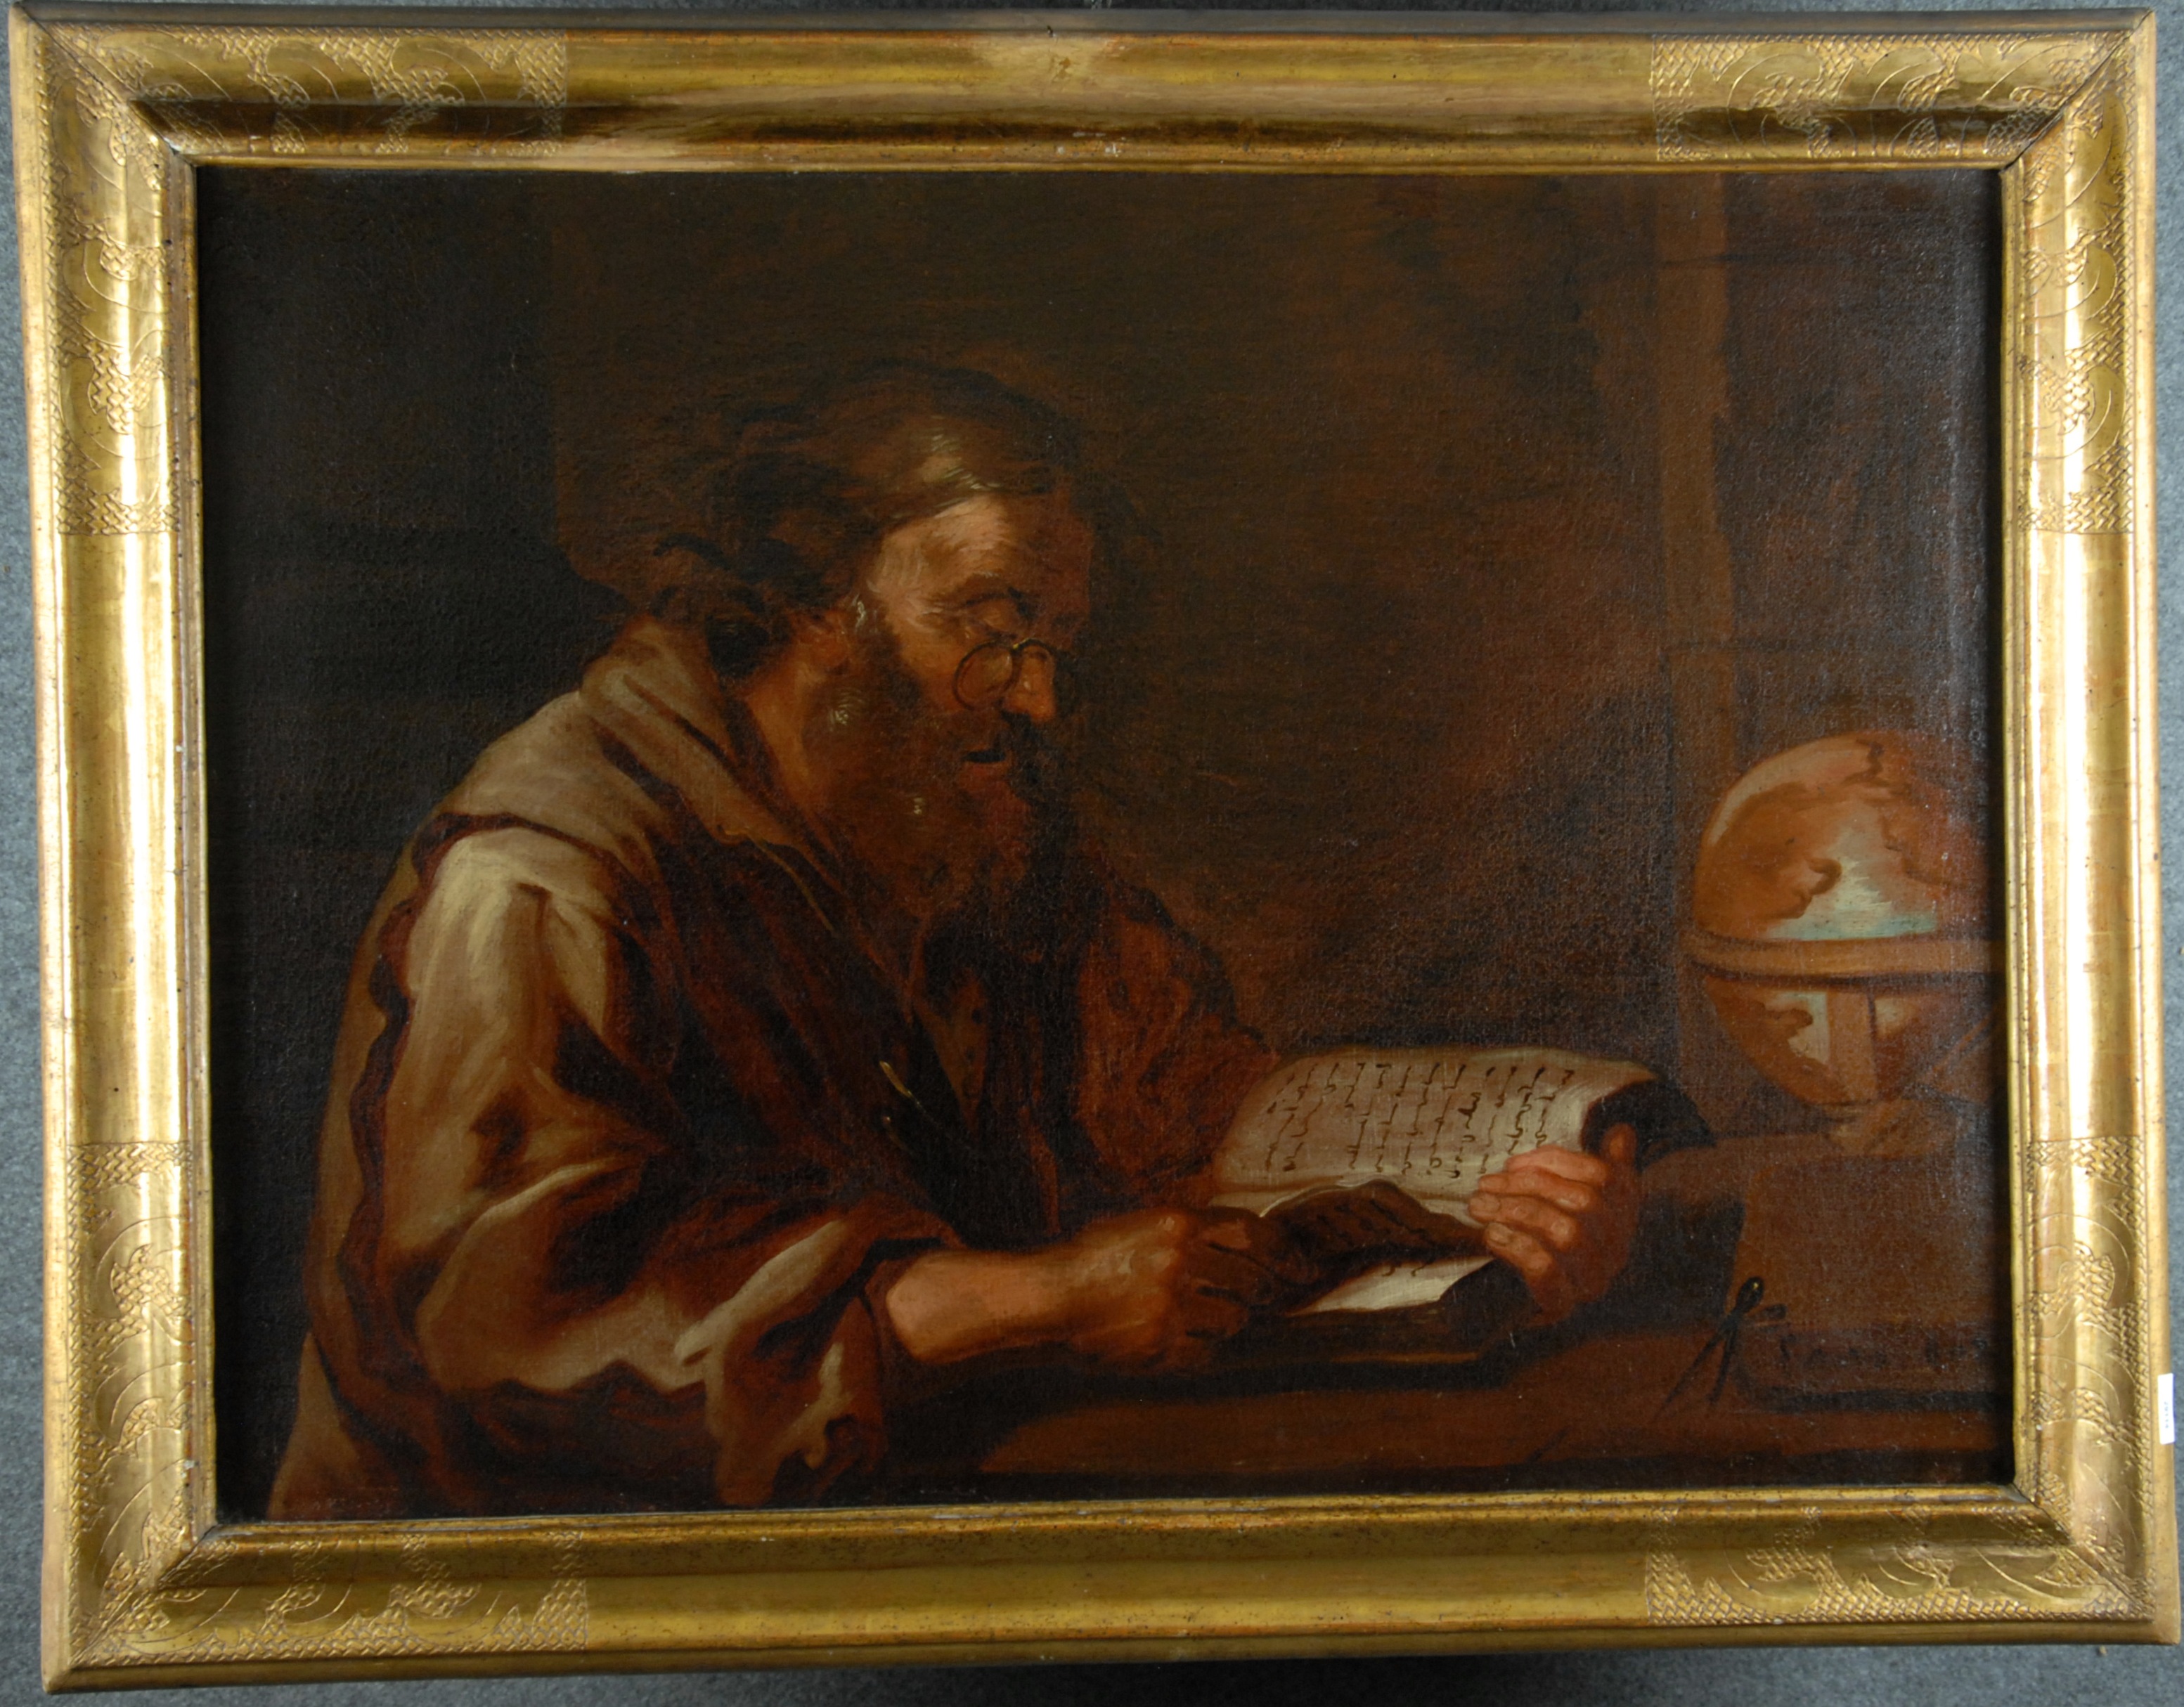 Dipinto olio su tela raff. ''STUDIOSO''. Firma non identificata in basso a destra. XVII secolo. In